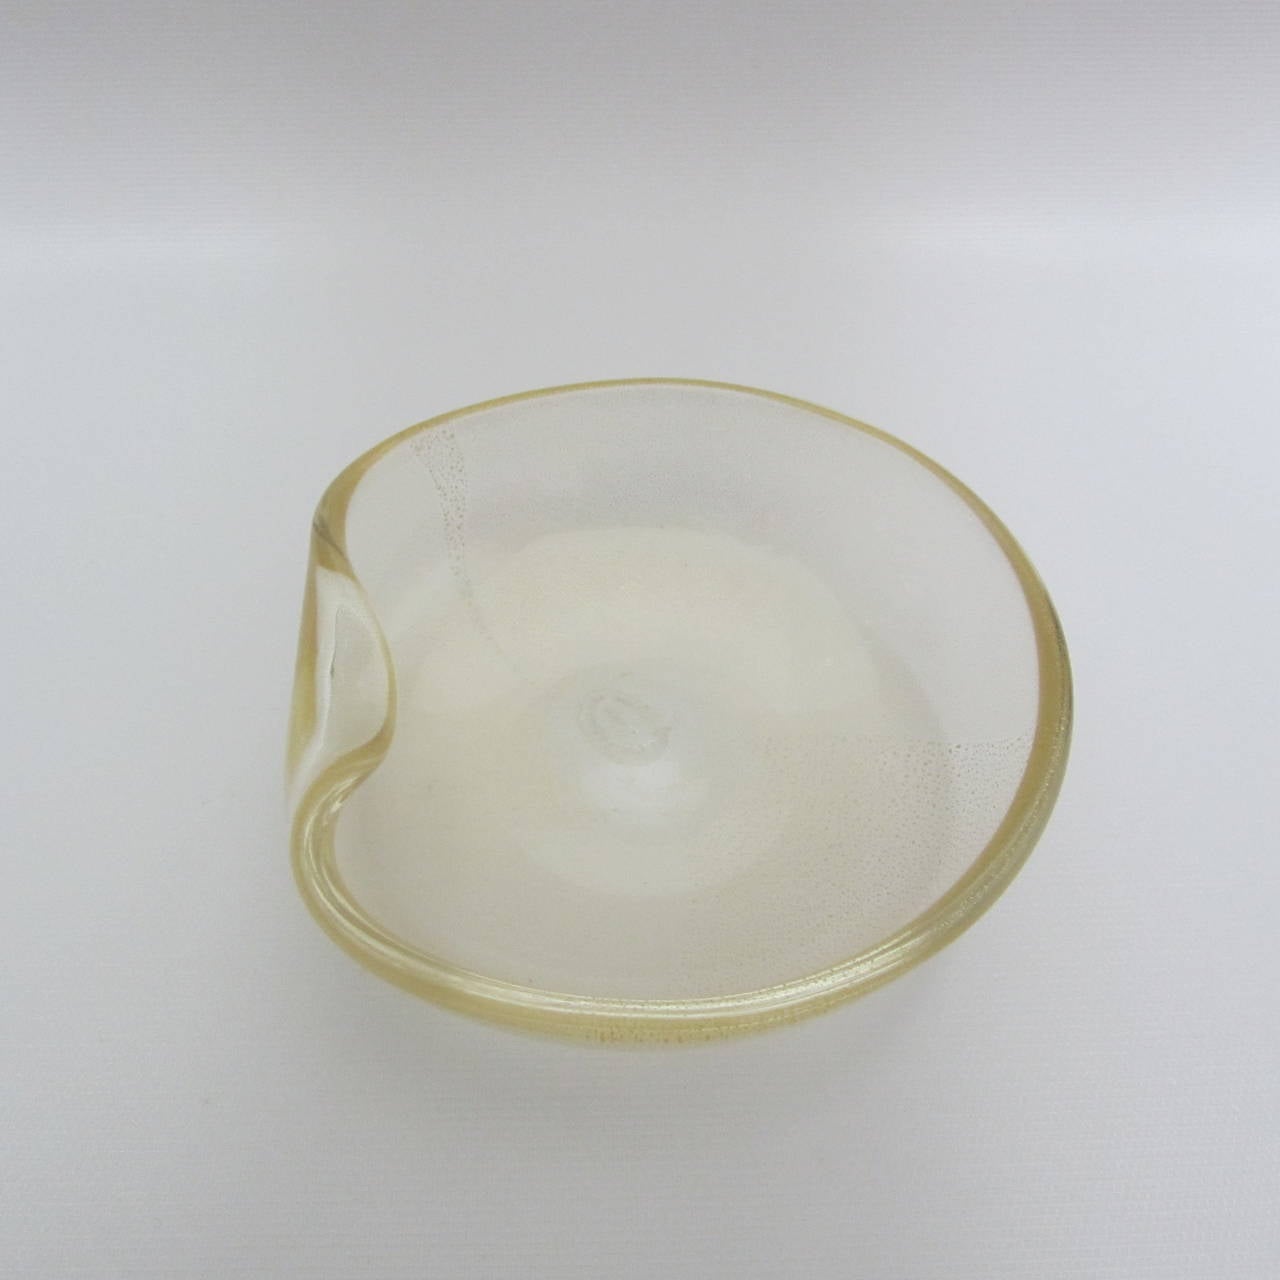 Elsa Peretti for Tiffany Handblown Murano Glass Dish by Archimede Seguso In Excellent Condition For Sale In Miami, FL